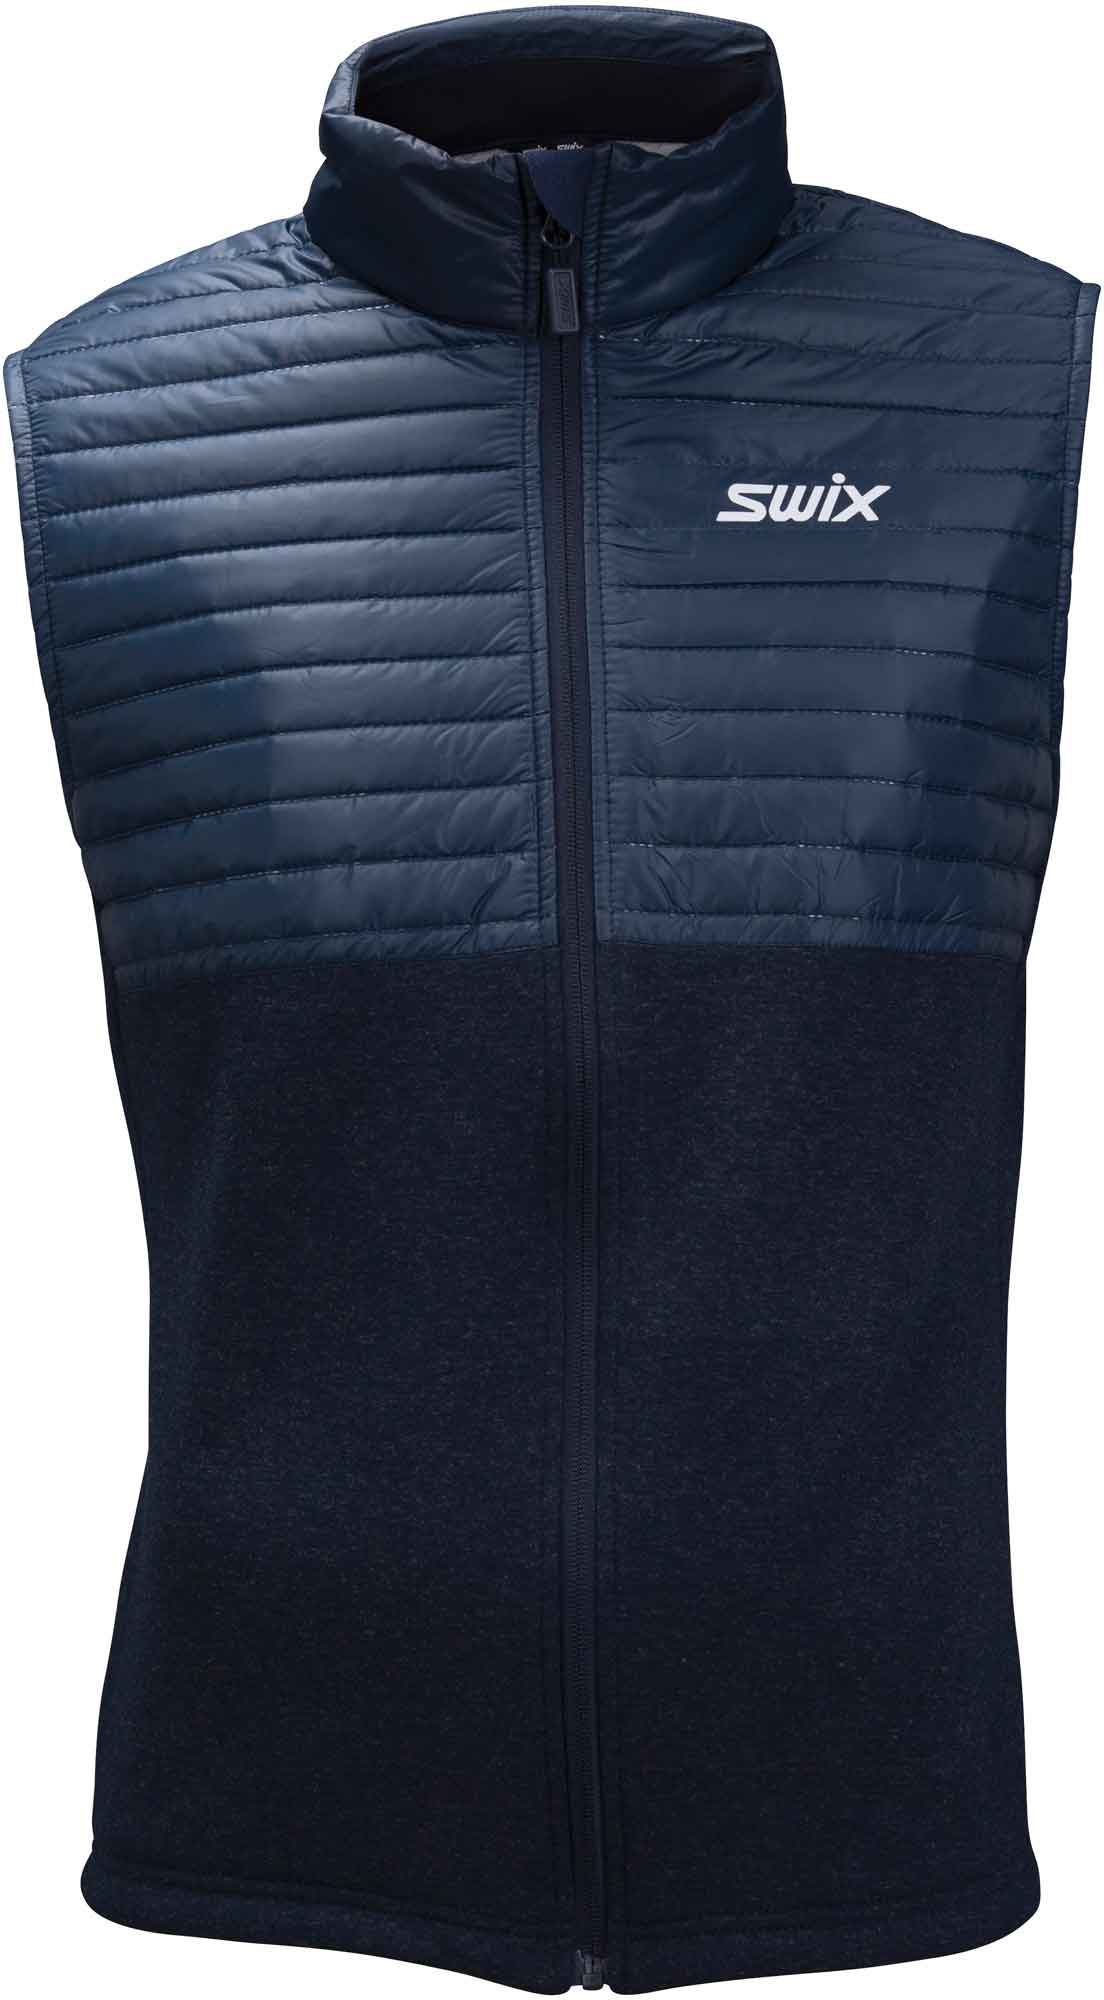 Combination sports vest